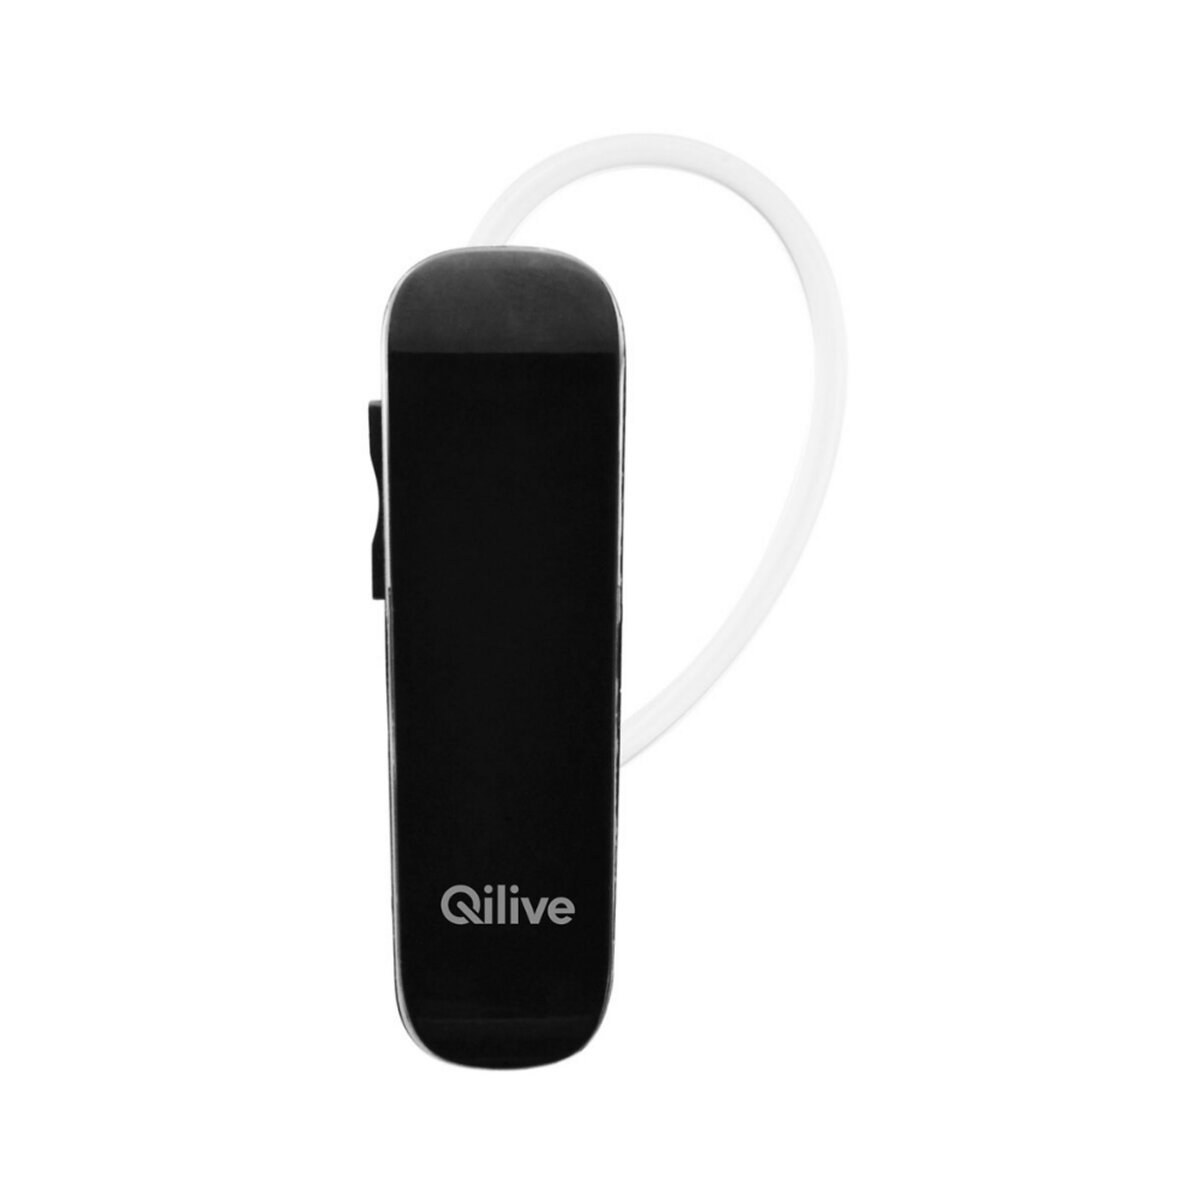 QILIVE Kit oreillette - Noir - Bluetooth